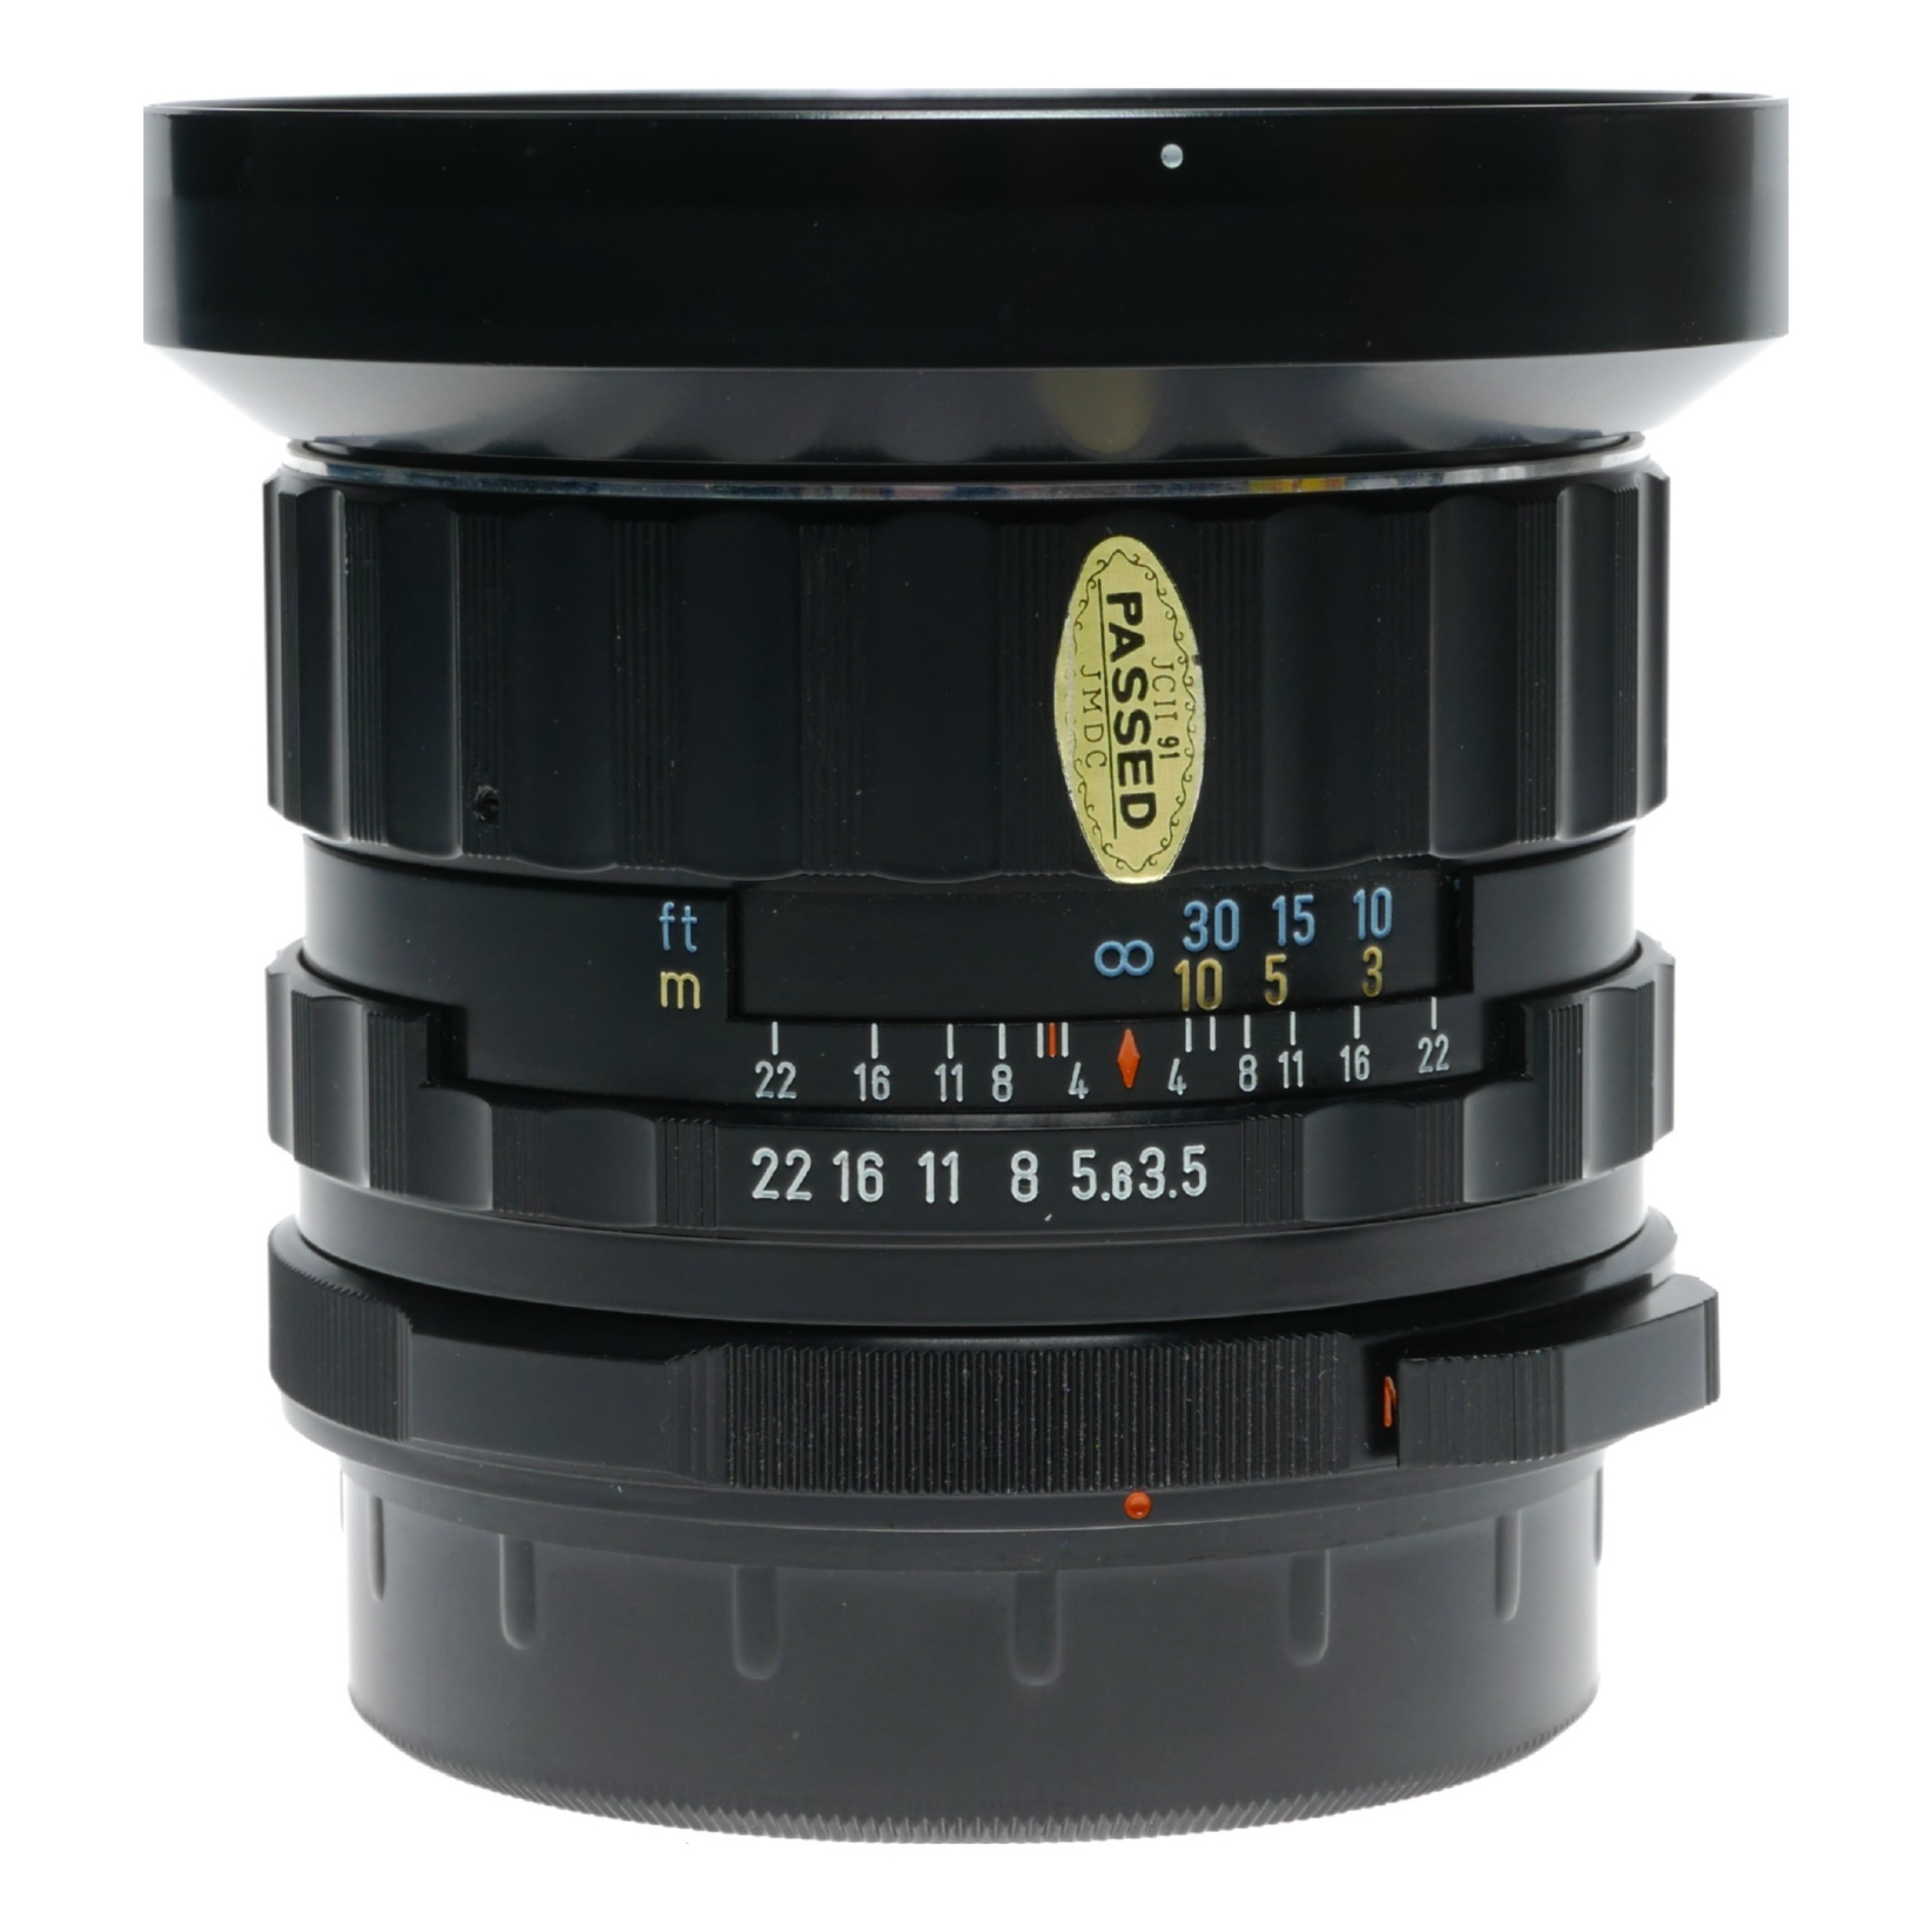 Takumar 6x7 1:3.5/55 Asahi Super-Multi-Coated 55mm Pentax f/3.5 lens